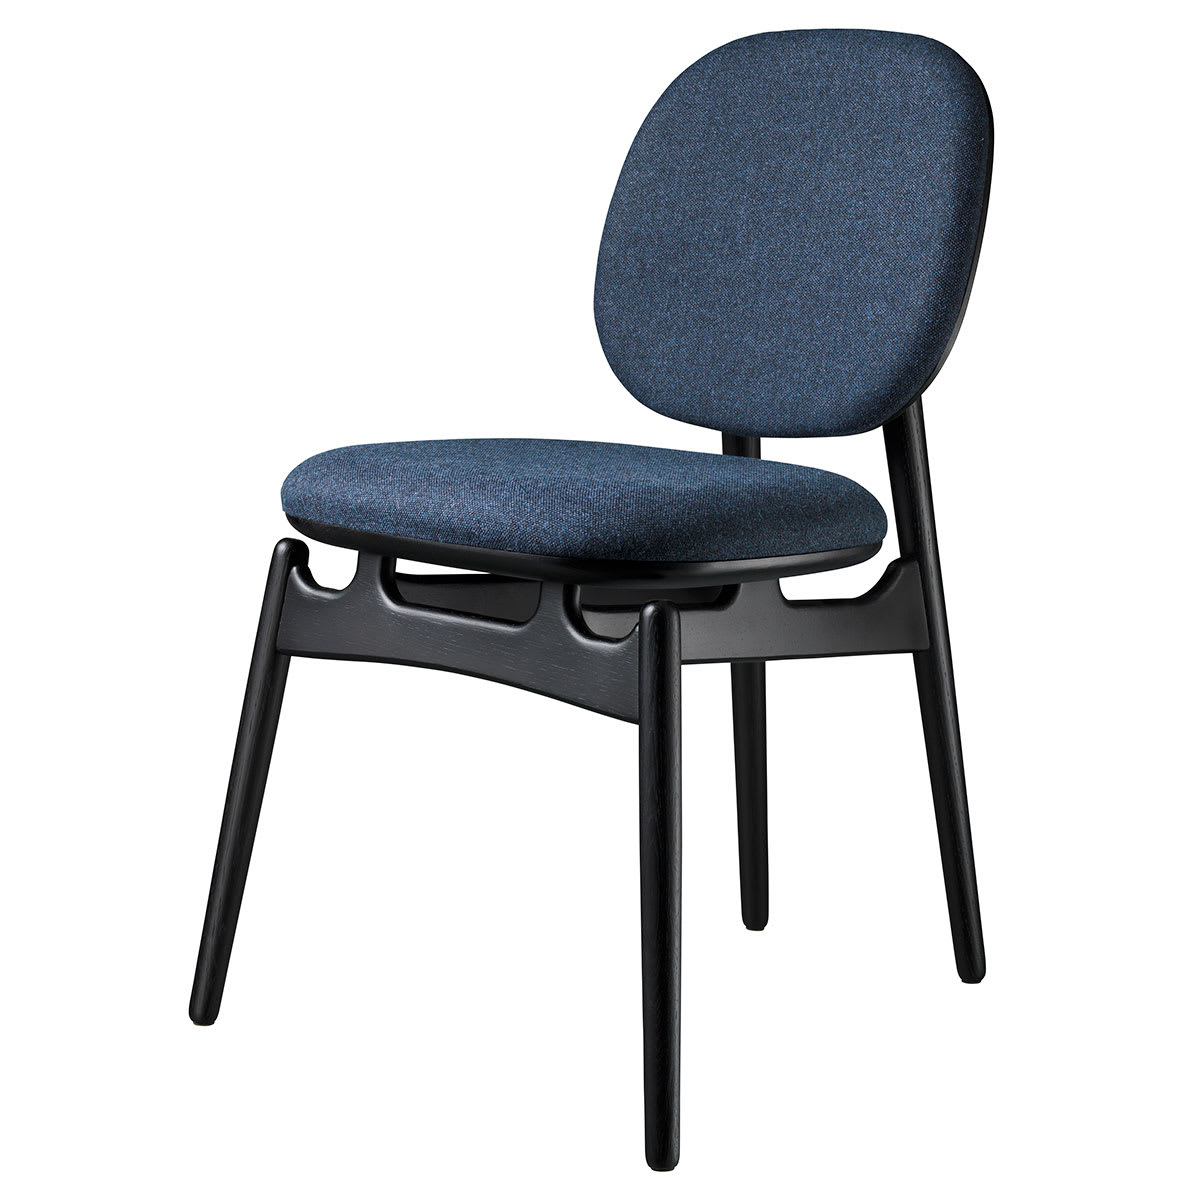 Fdb Møbler J161 Chaise de salle à manger, chêne noir / textile bleu foncé